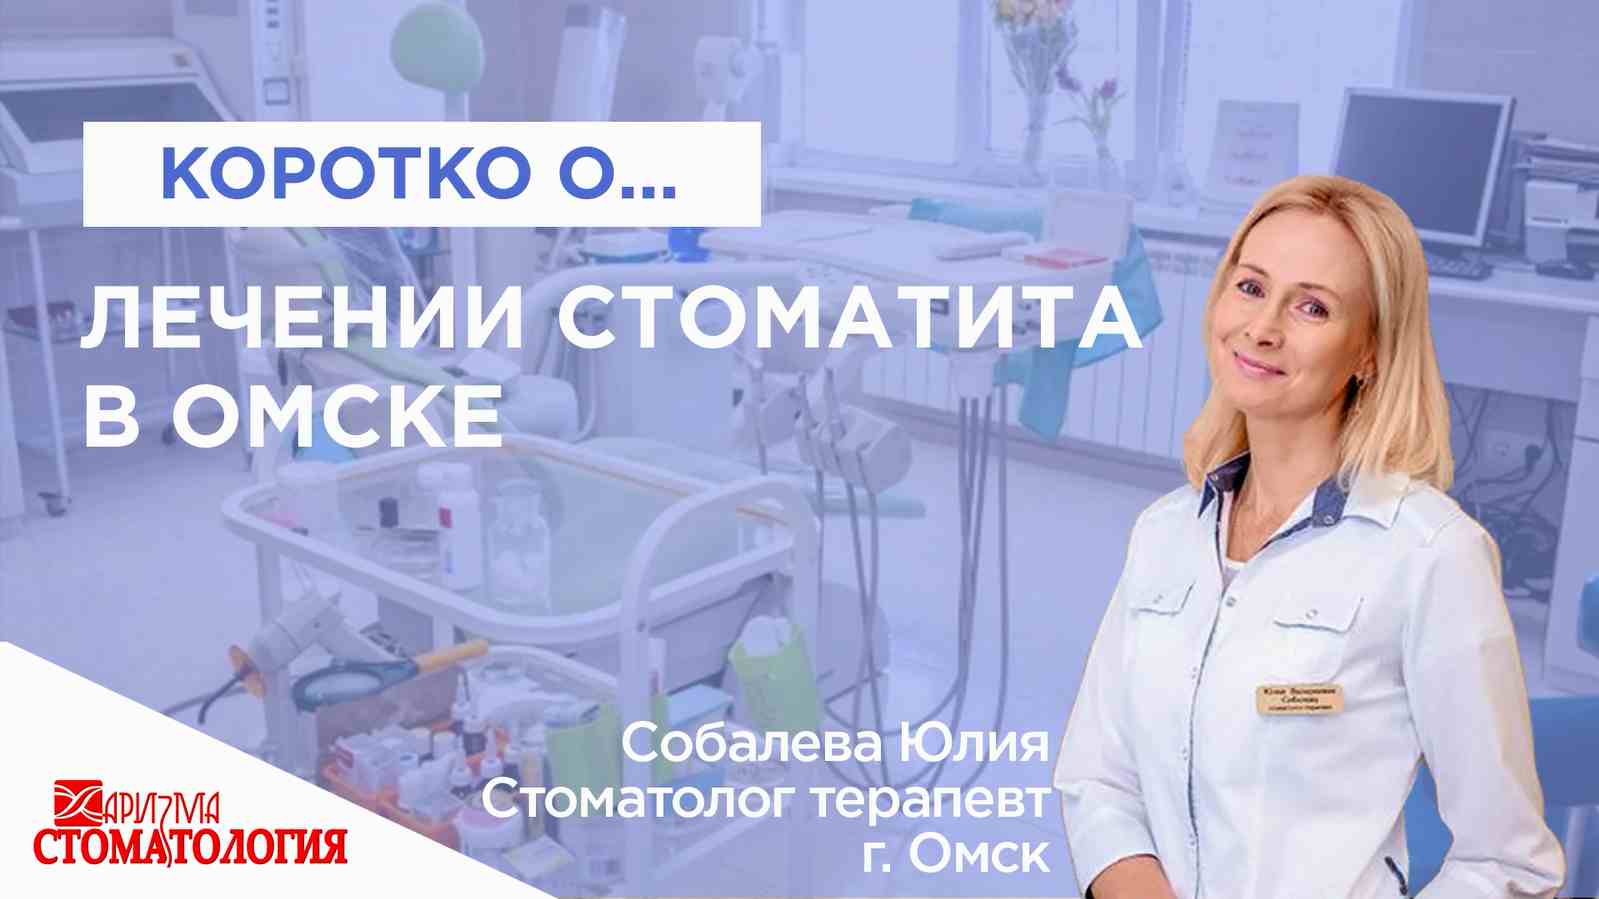 Лечение лечение стоматита в Омске по доступной цене в Омске в клинике Харизма недорого 